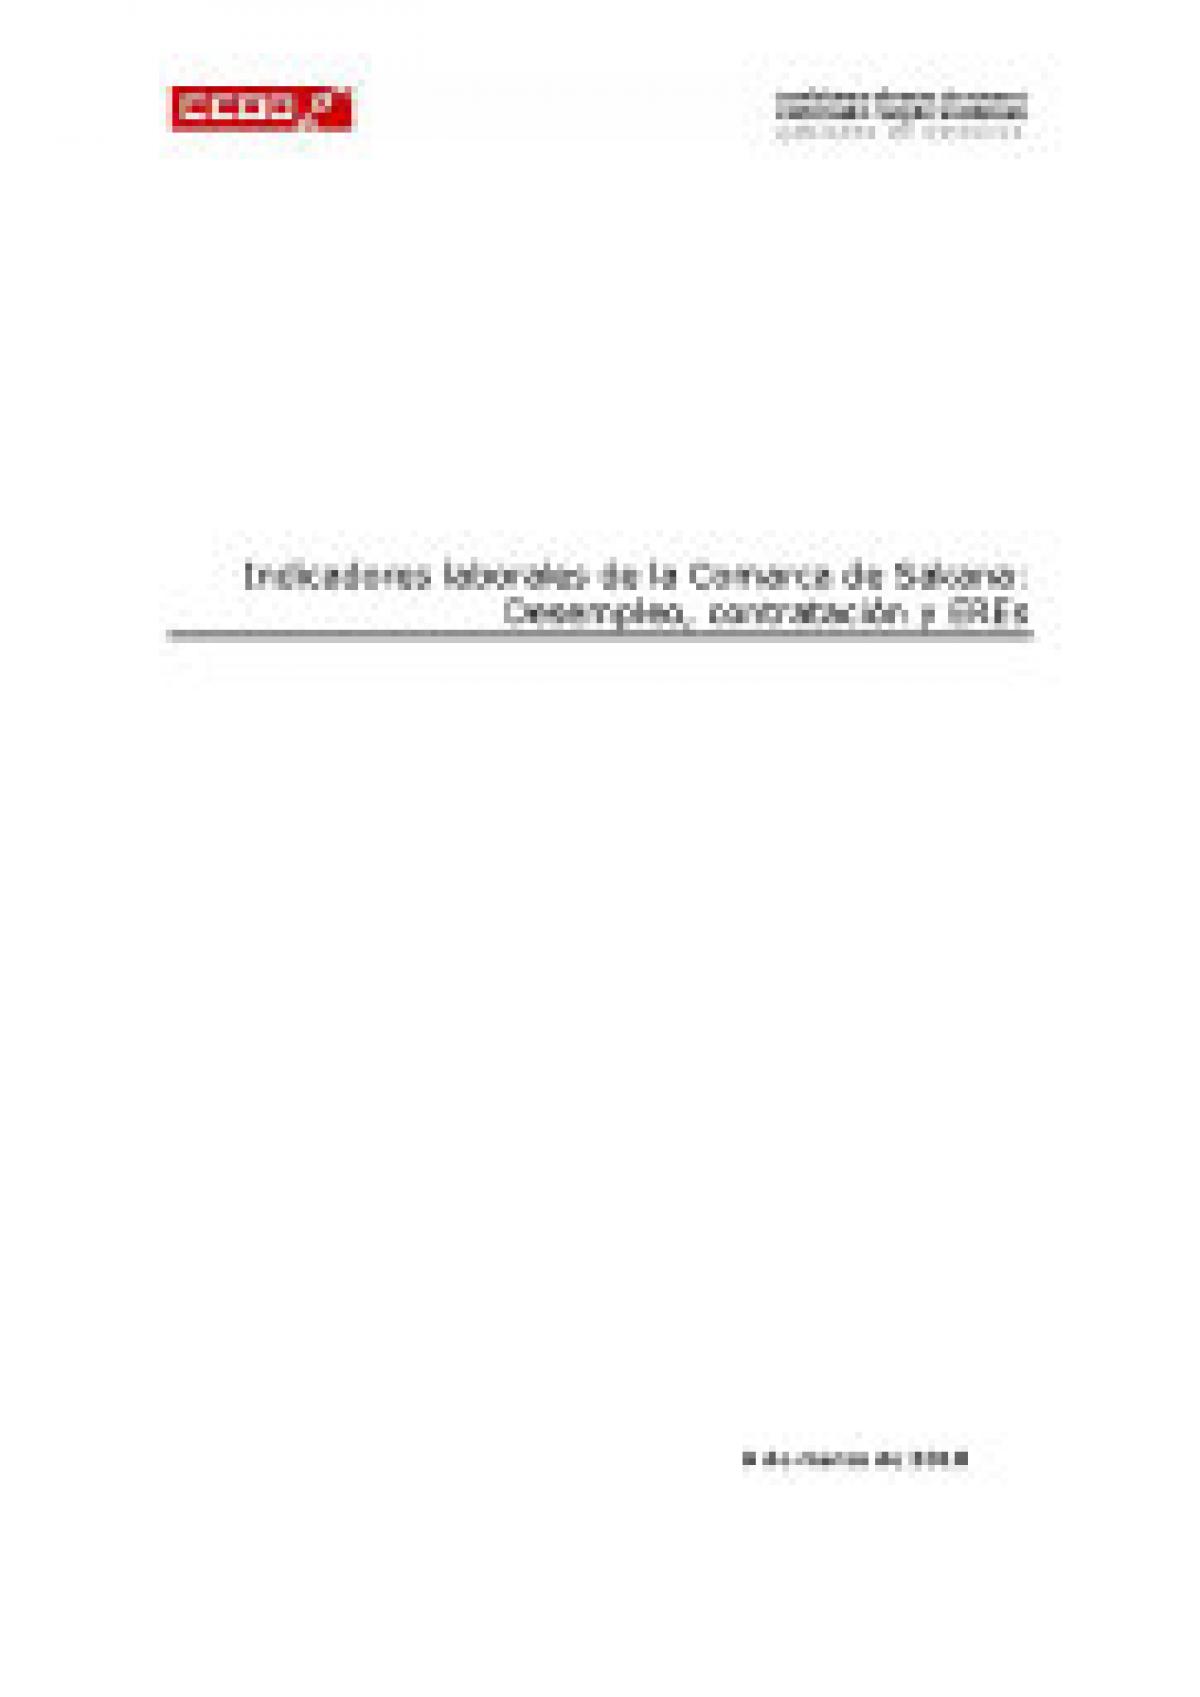 Indicadores laborales de la Comarca de Sakana: Desempleo, Contratacin y EREs. Marzo 2010.